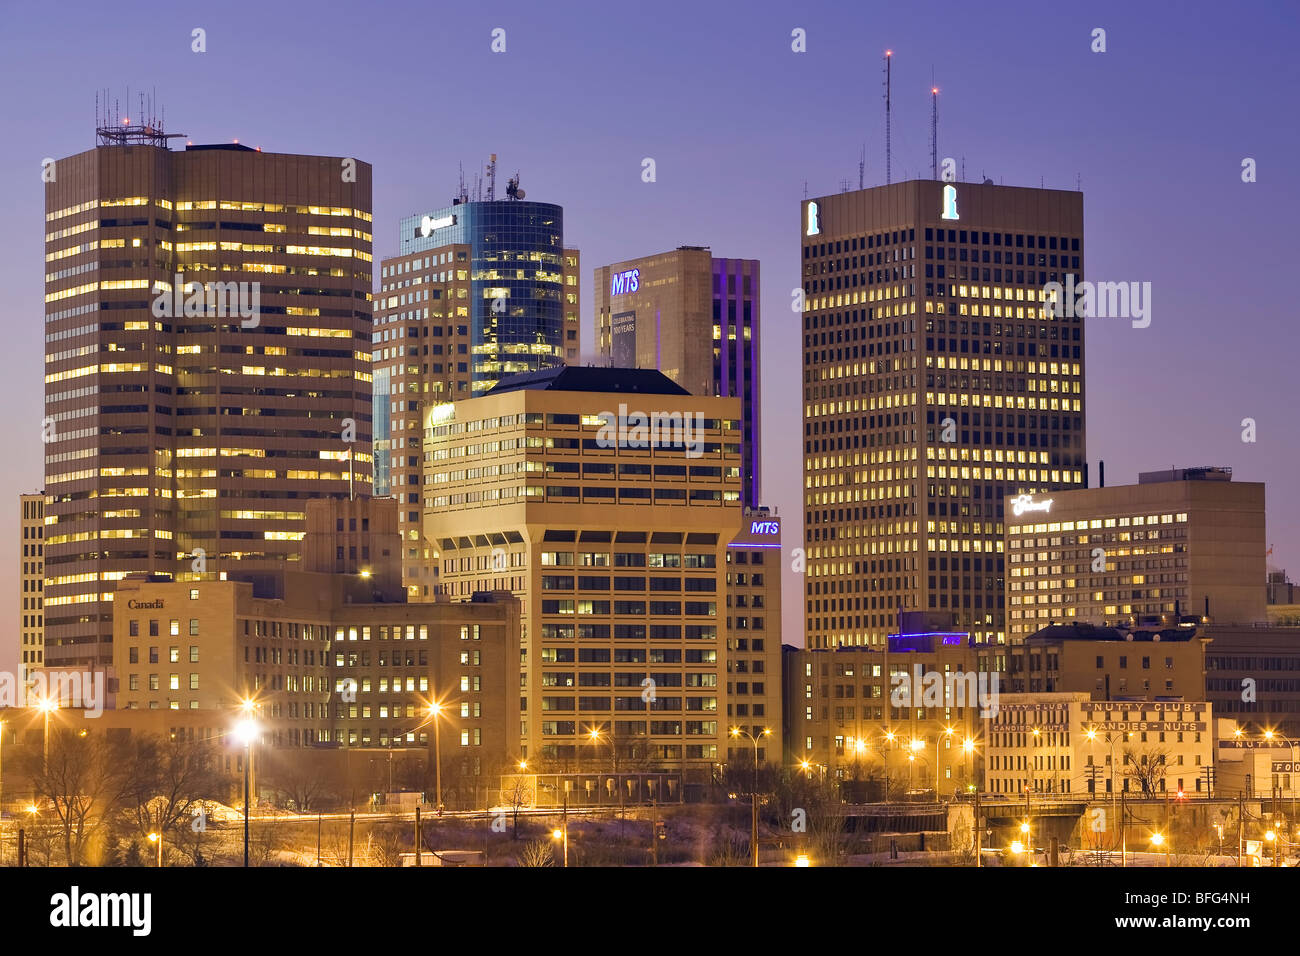 Toits de centre-ville de Winnipeg, Manitoba, Canada la nuit, à l'égard des rues Portage et Main Street. Banque D'Images